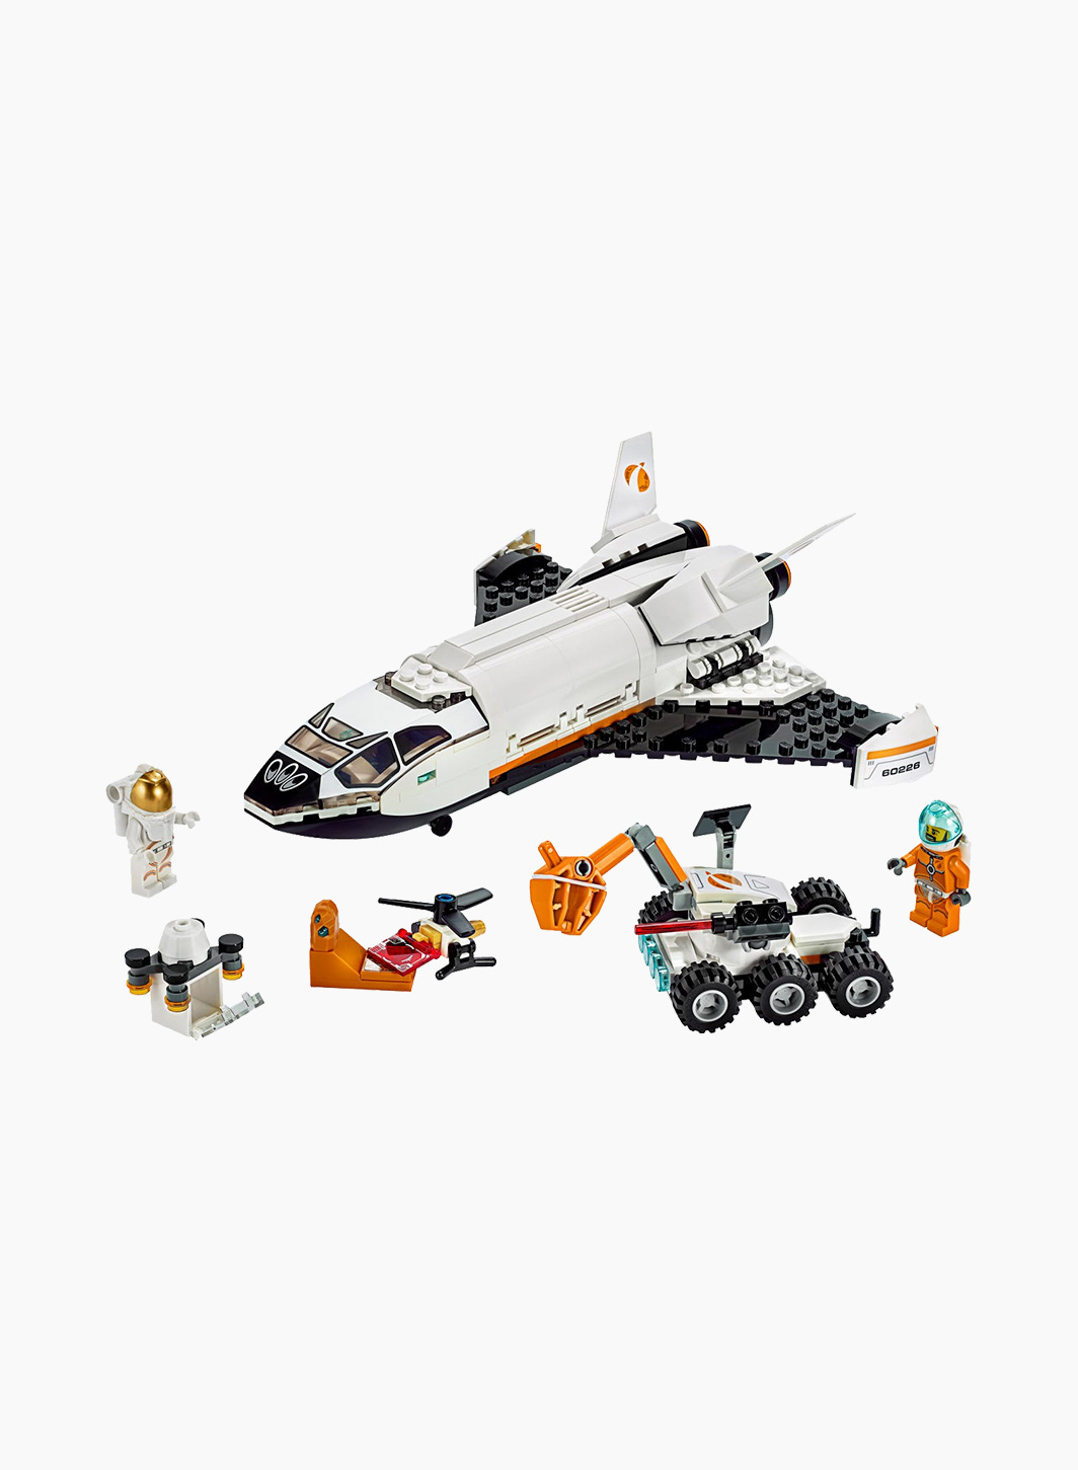 Lego City Конструктор Шаттл для Исследований Марса